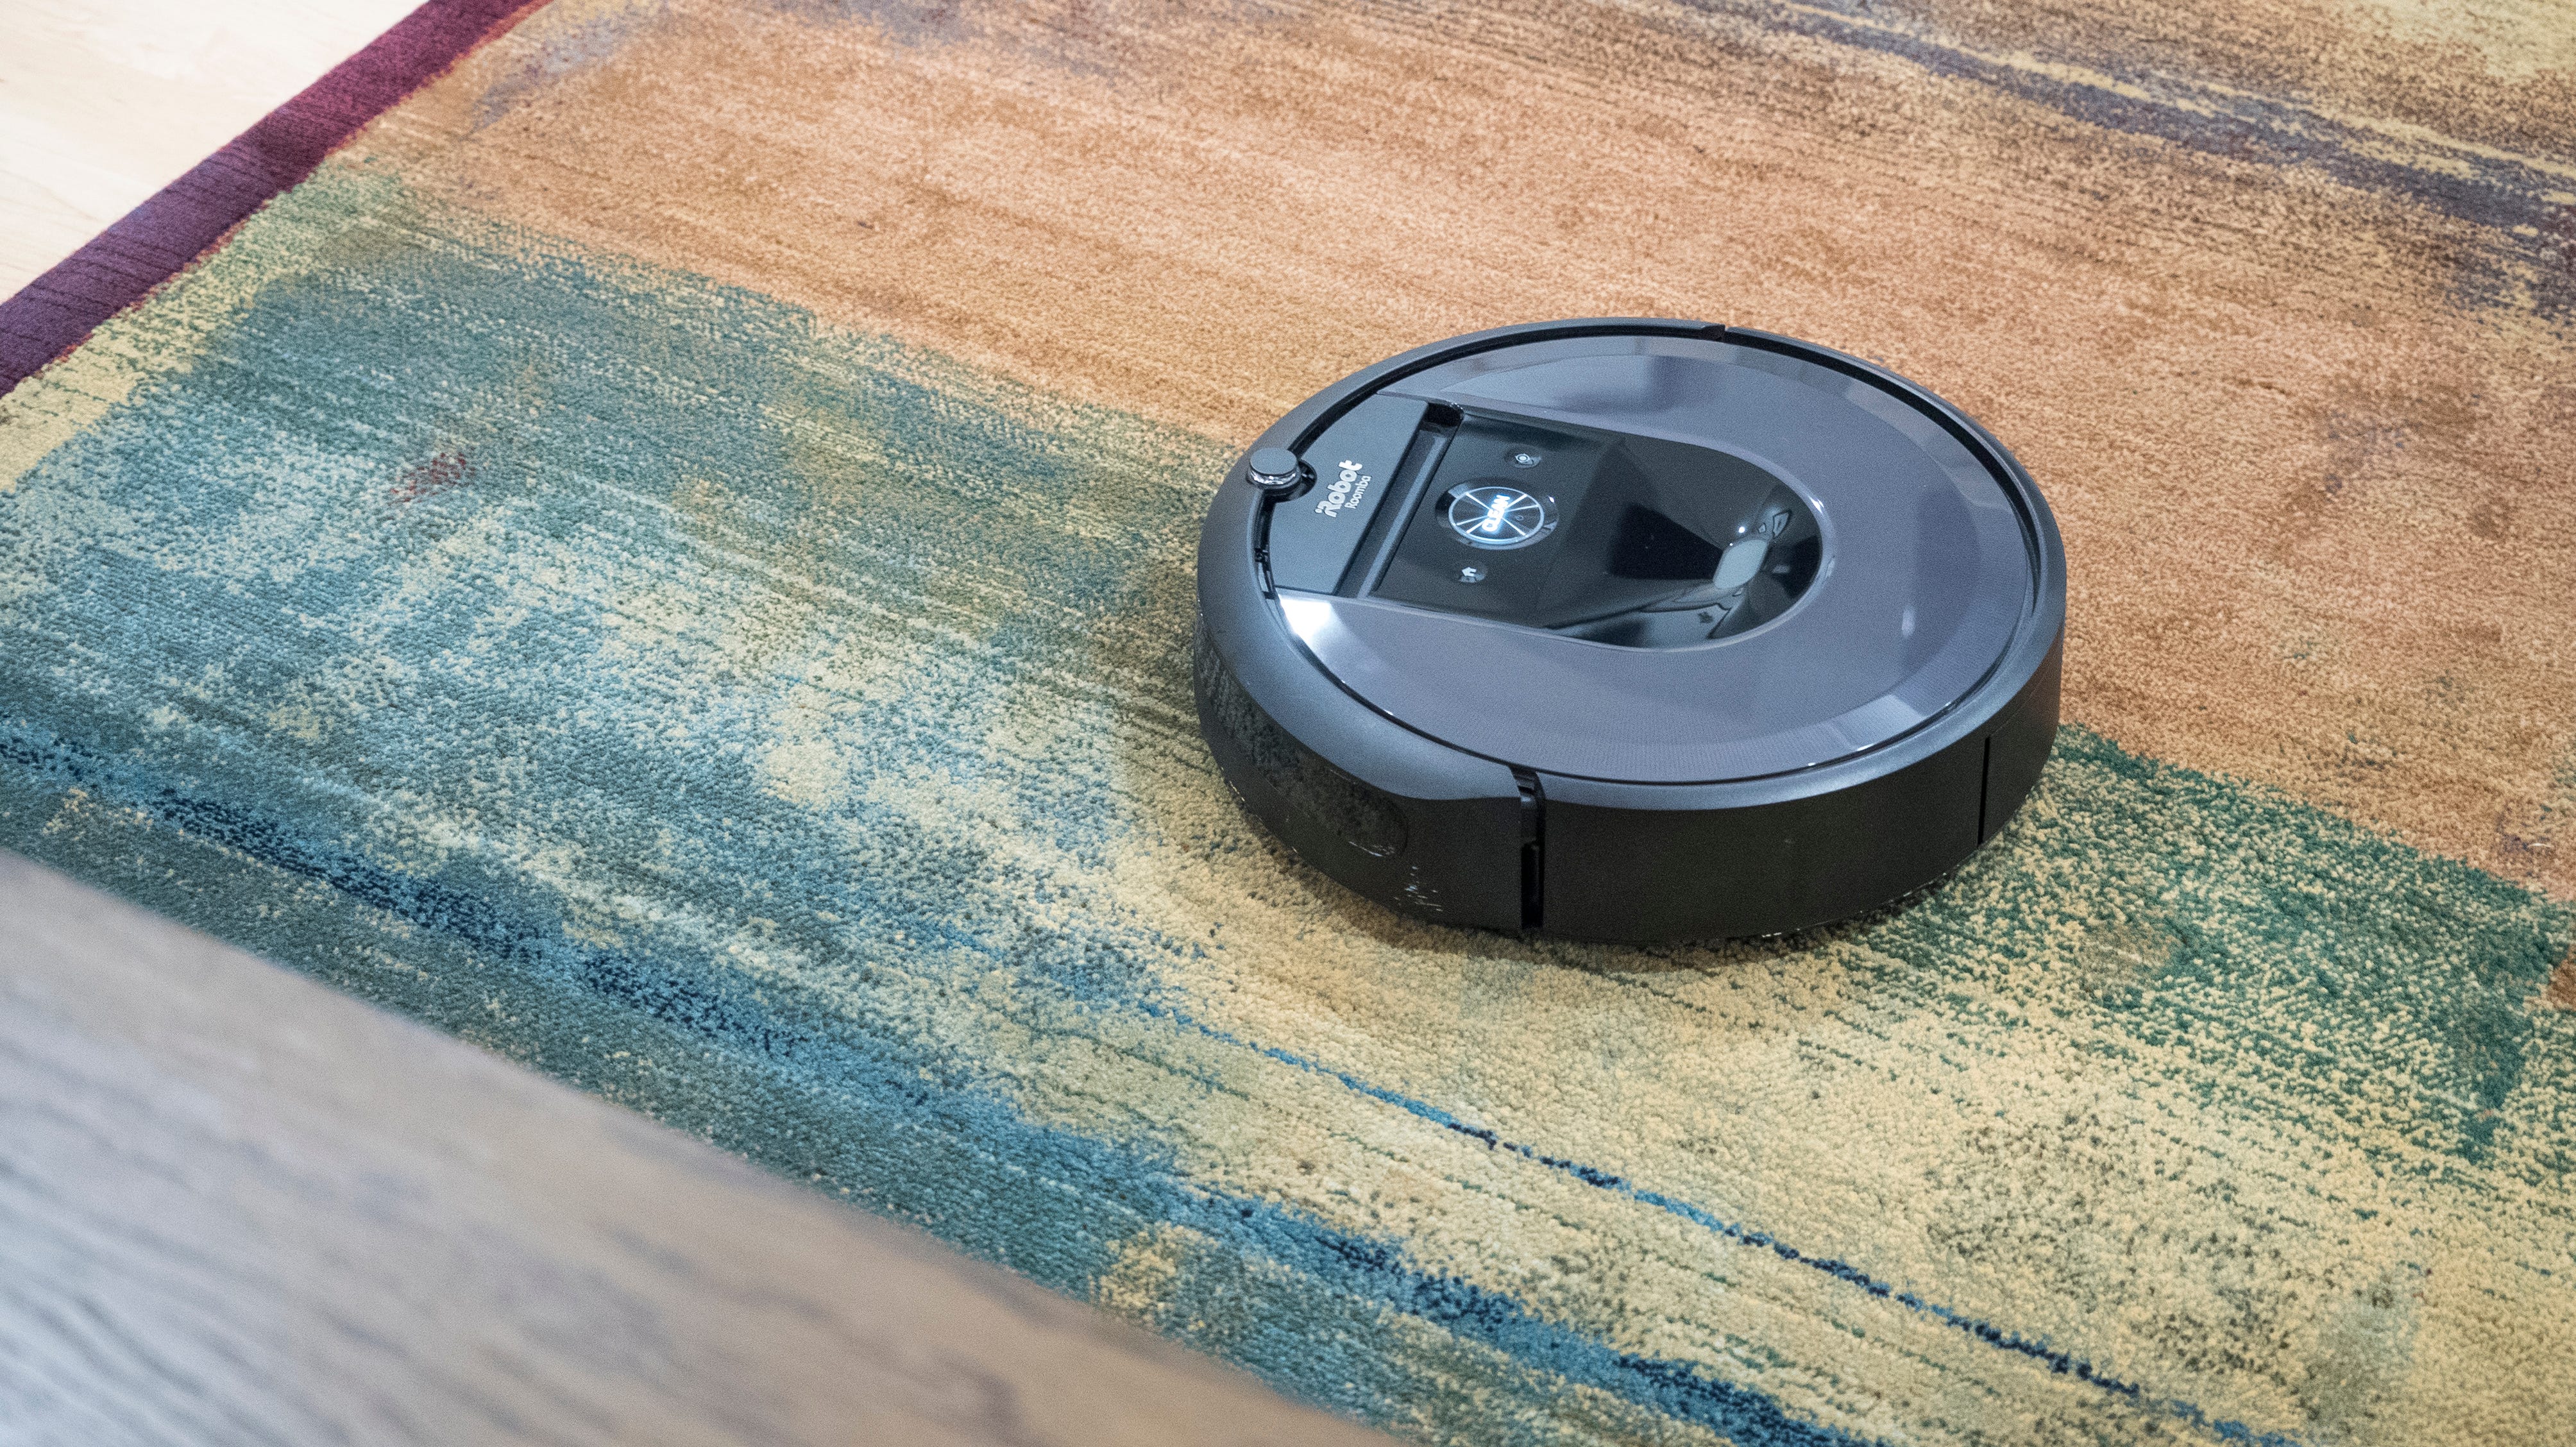 The Best Robot Vacuums For 2019 Irobot, Best Robot Hardwood Floor Cleaner